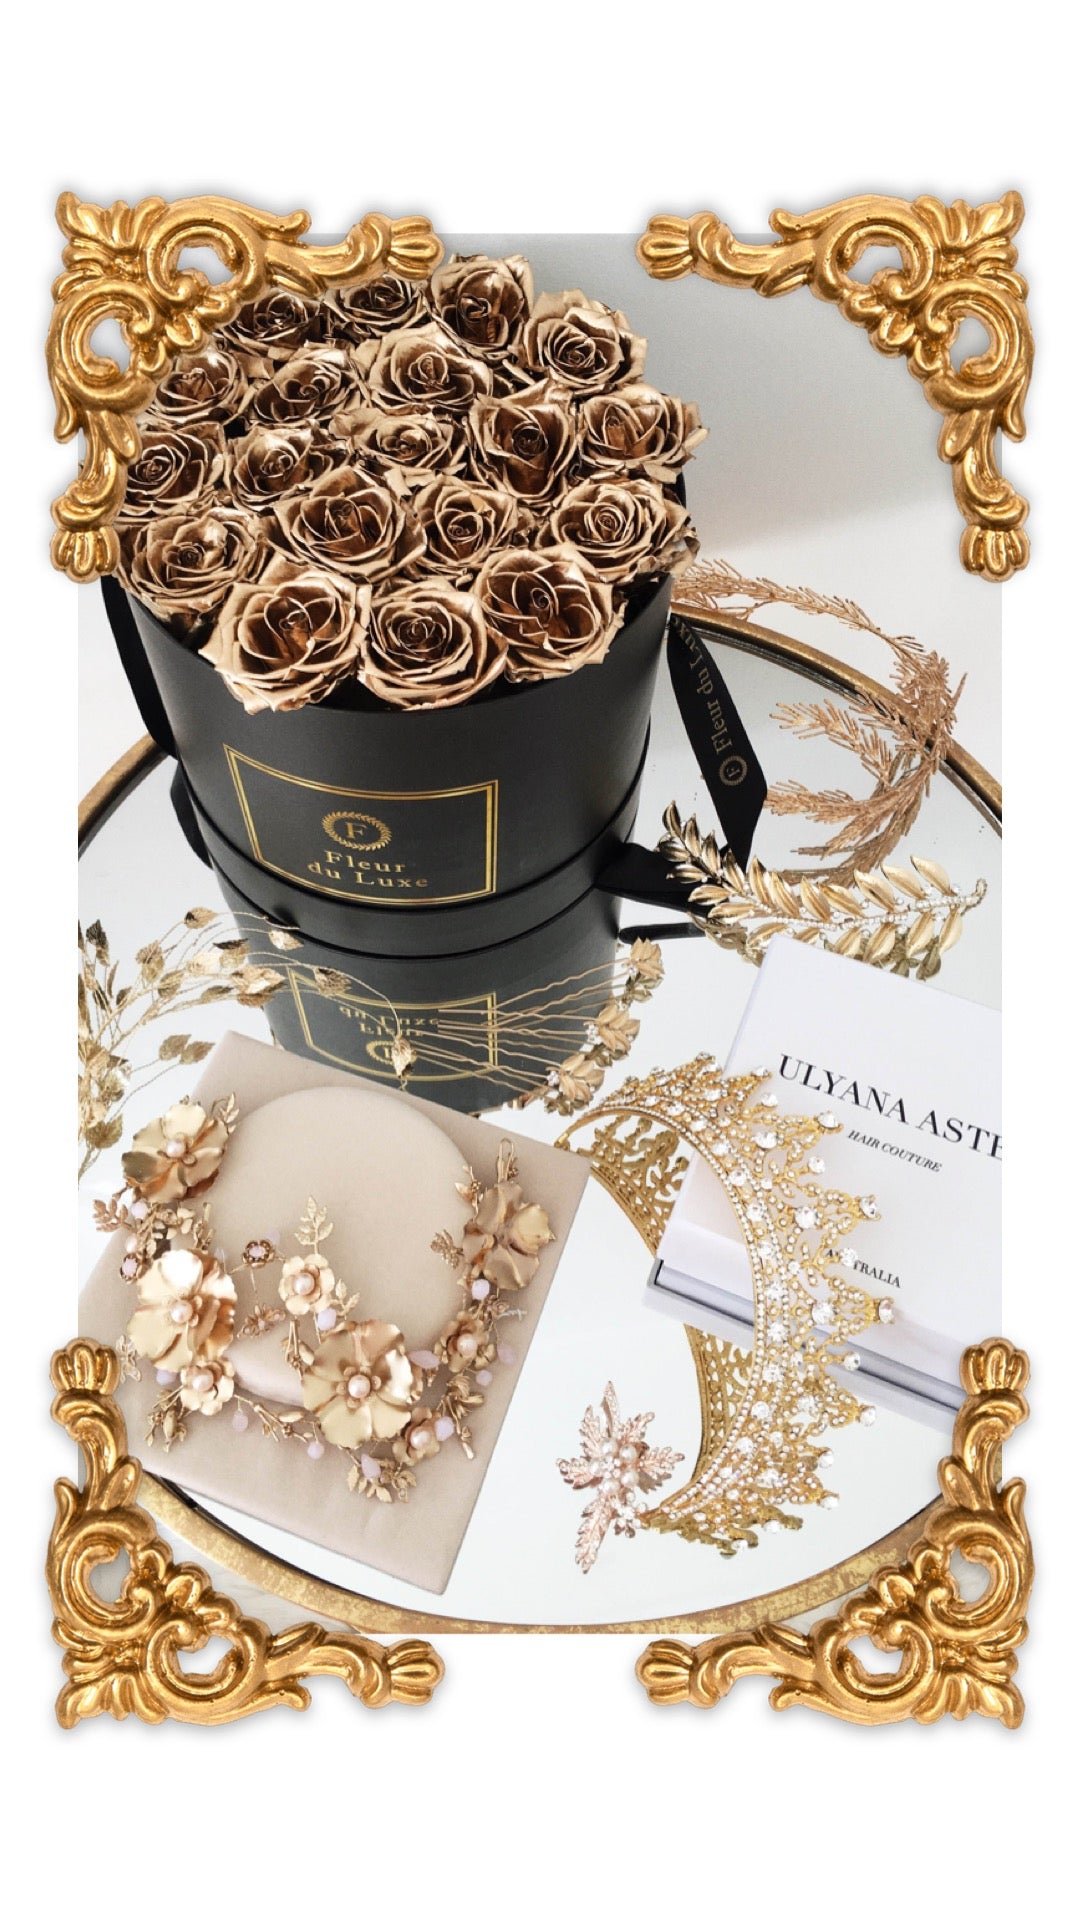 GOLD ROSES - Premium Round Box - Flowers